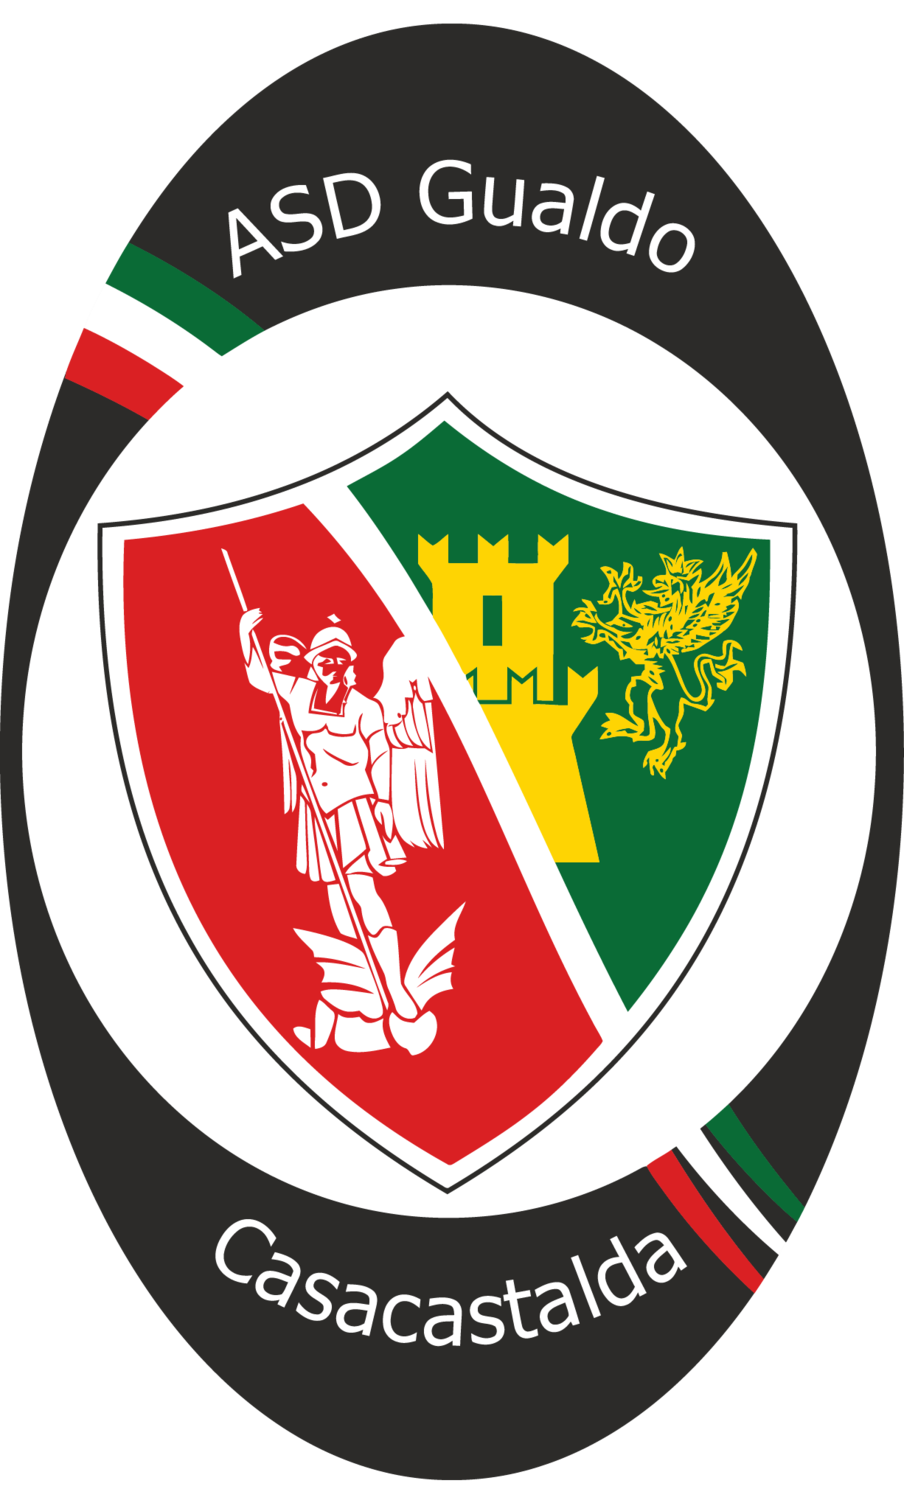 Wappen ASD Gualdo Casacastalda  84481